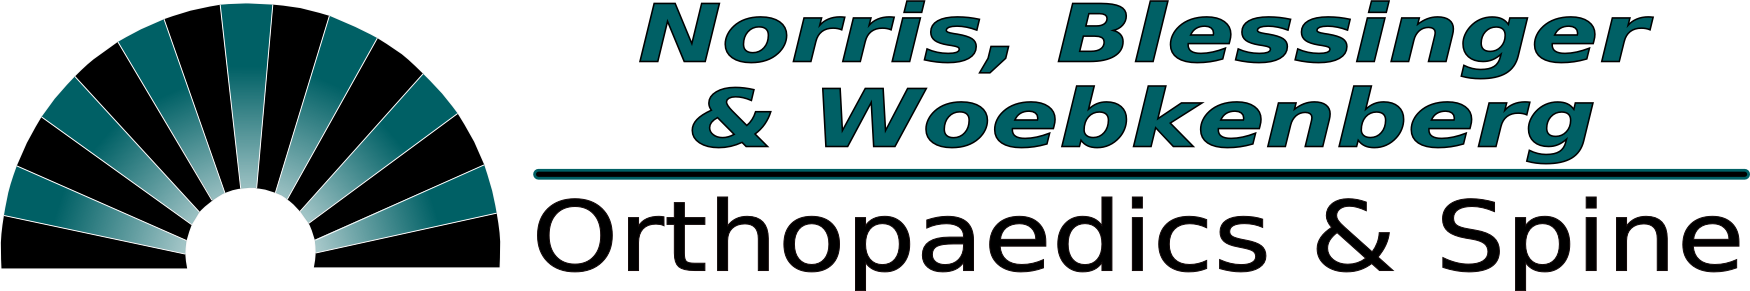 Norris & Blessinger Orthopaedics & Spine